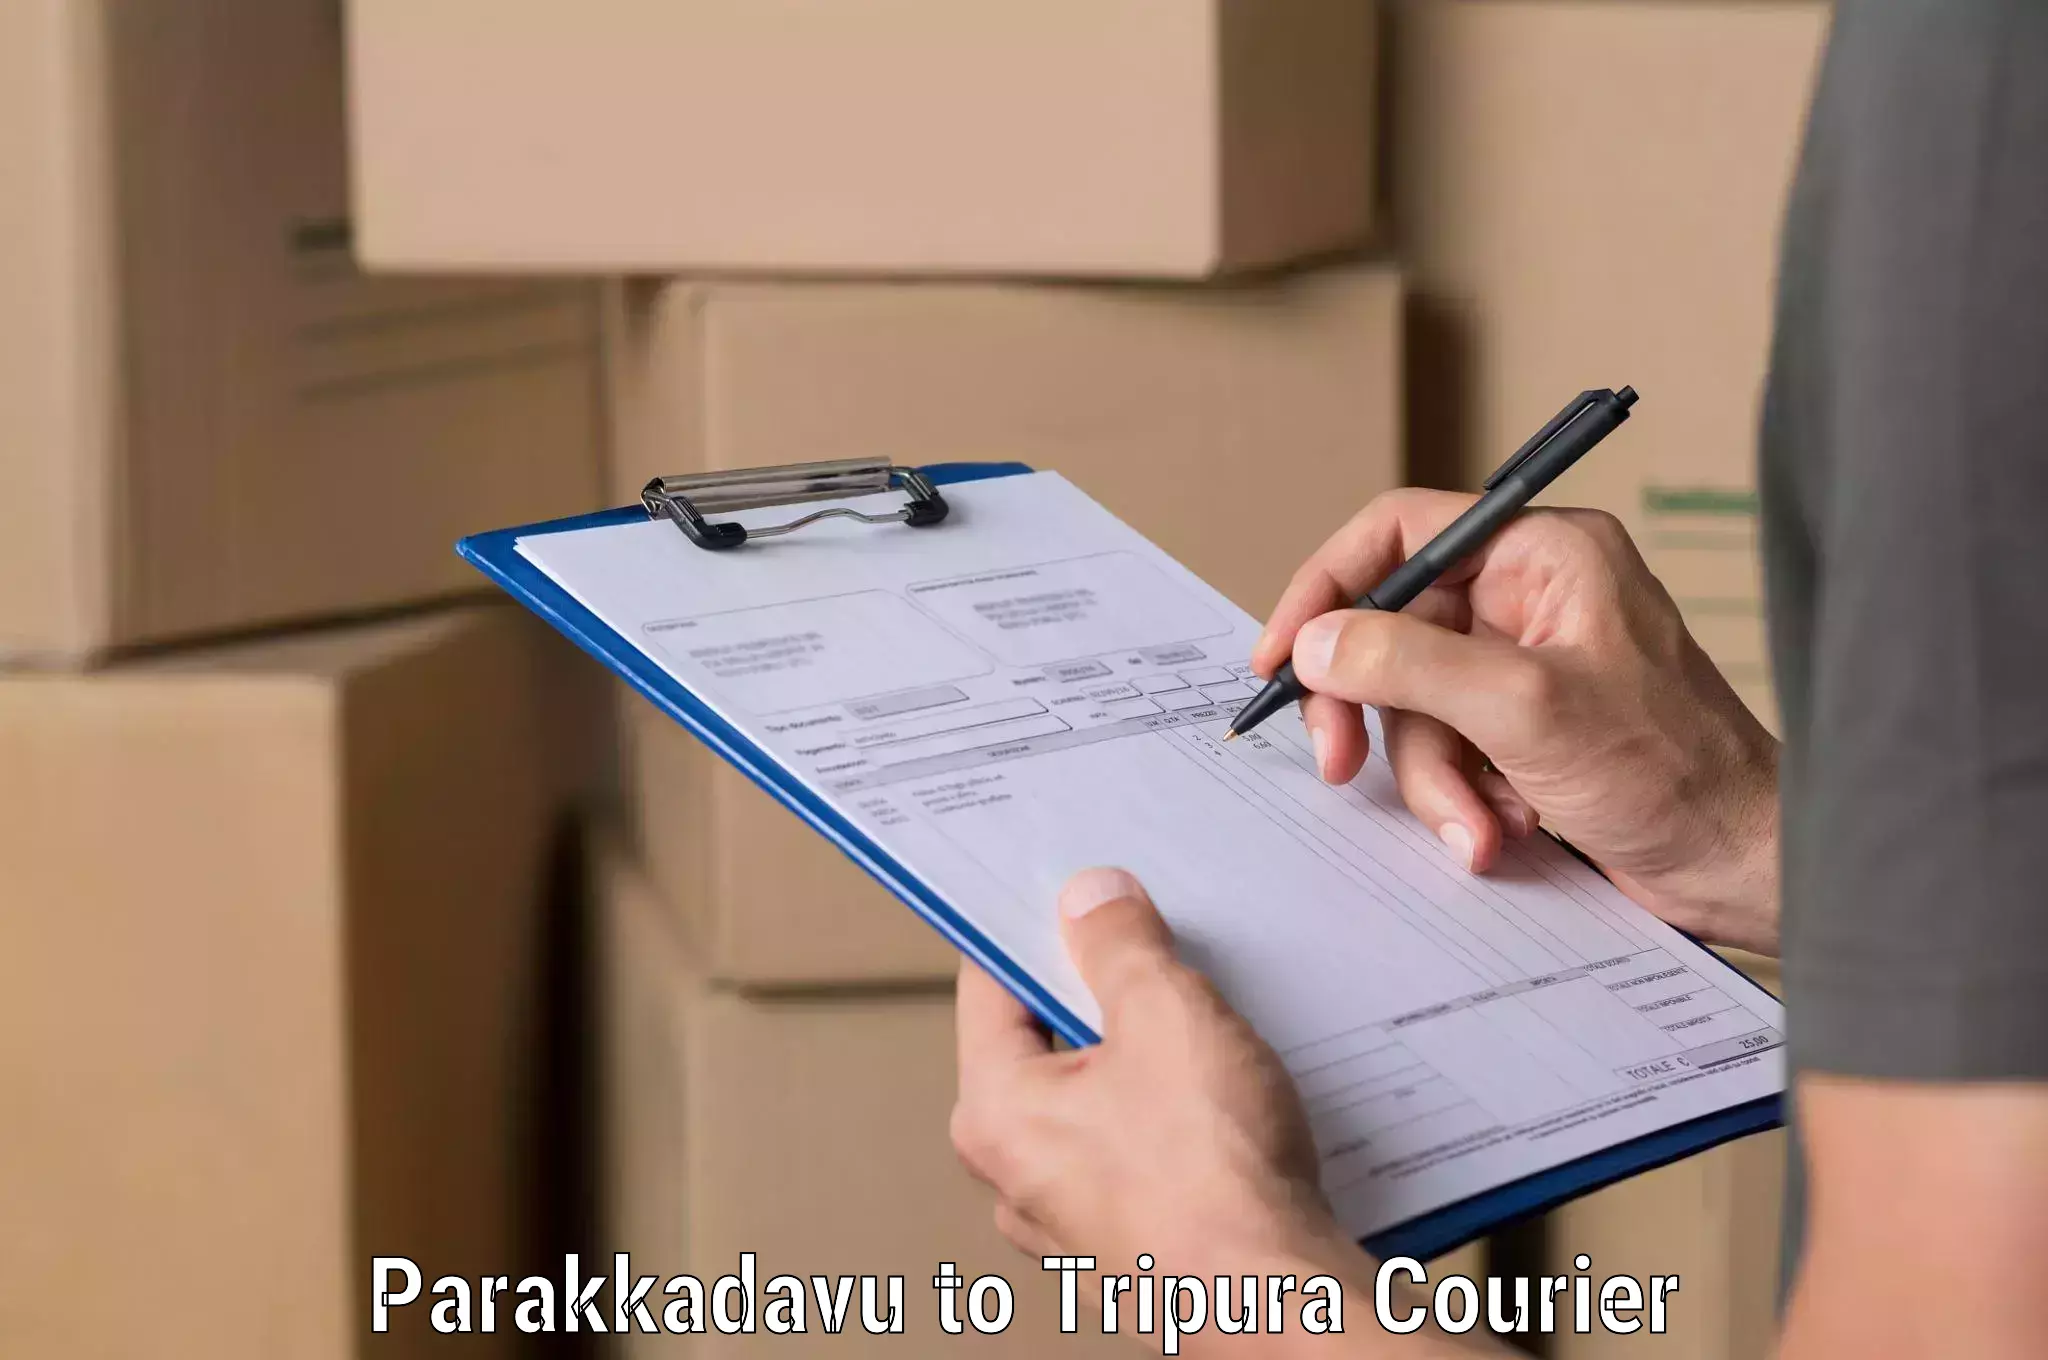 24-hour courier service Parakkadavu to Tripura